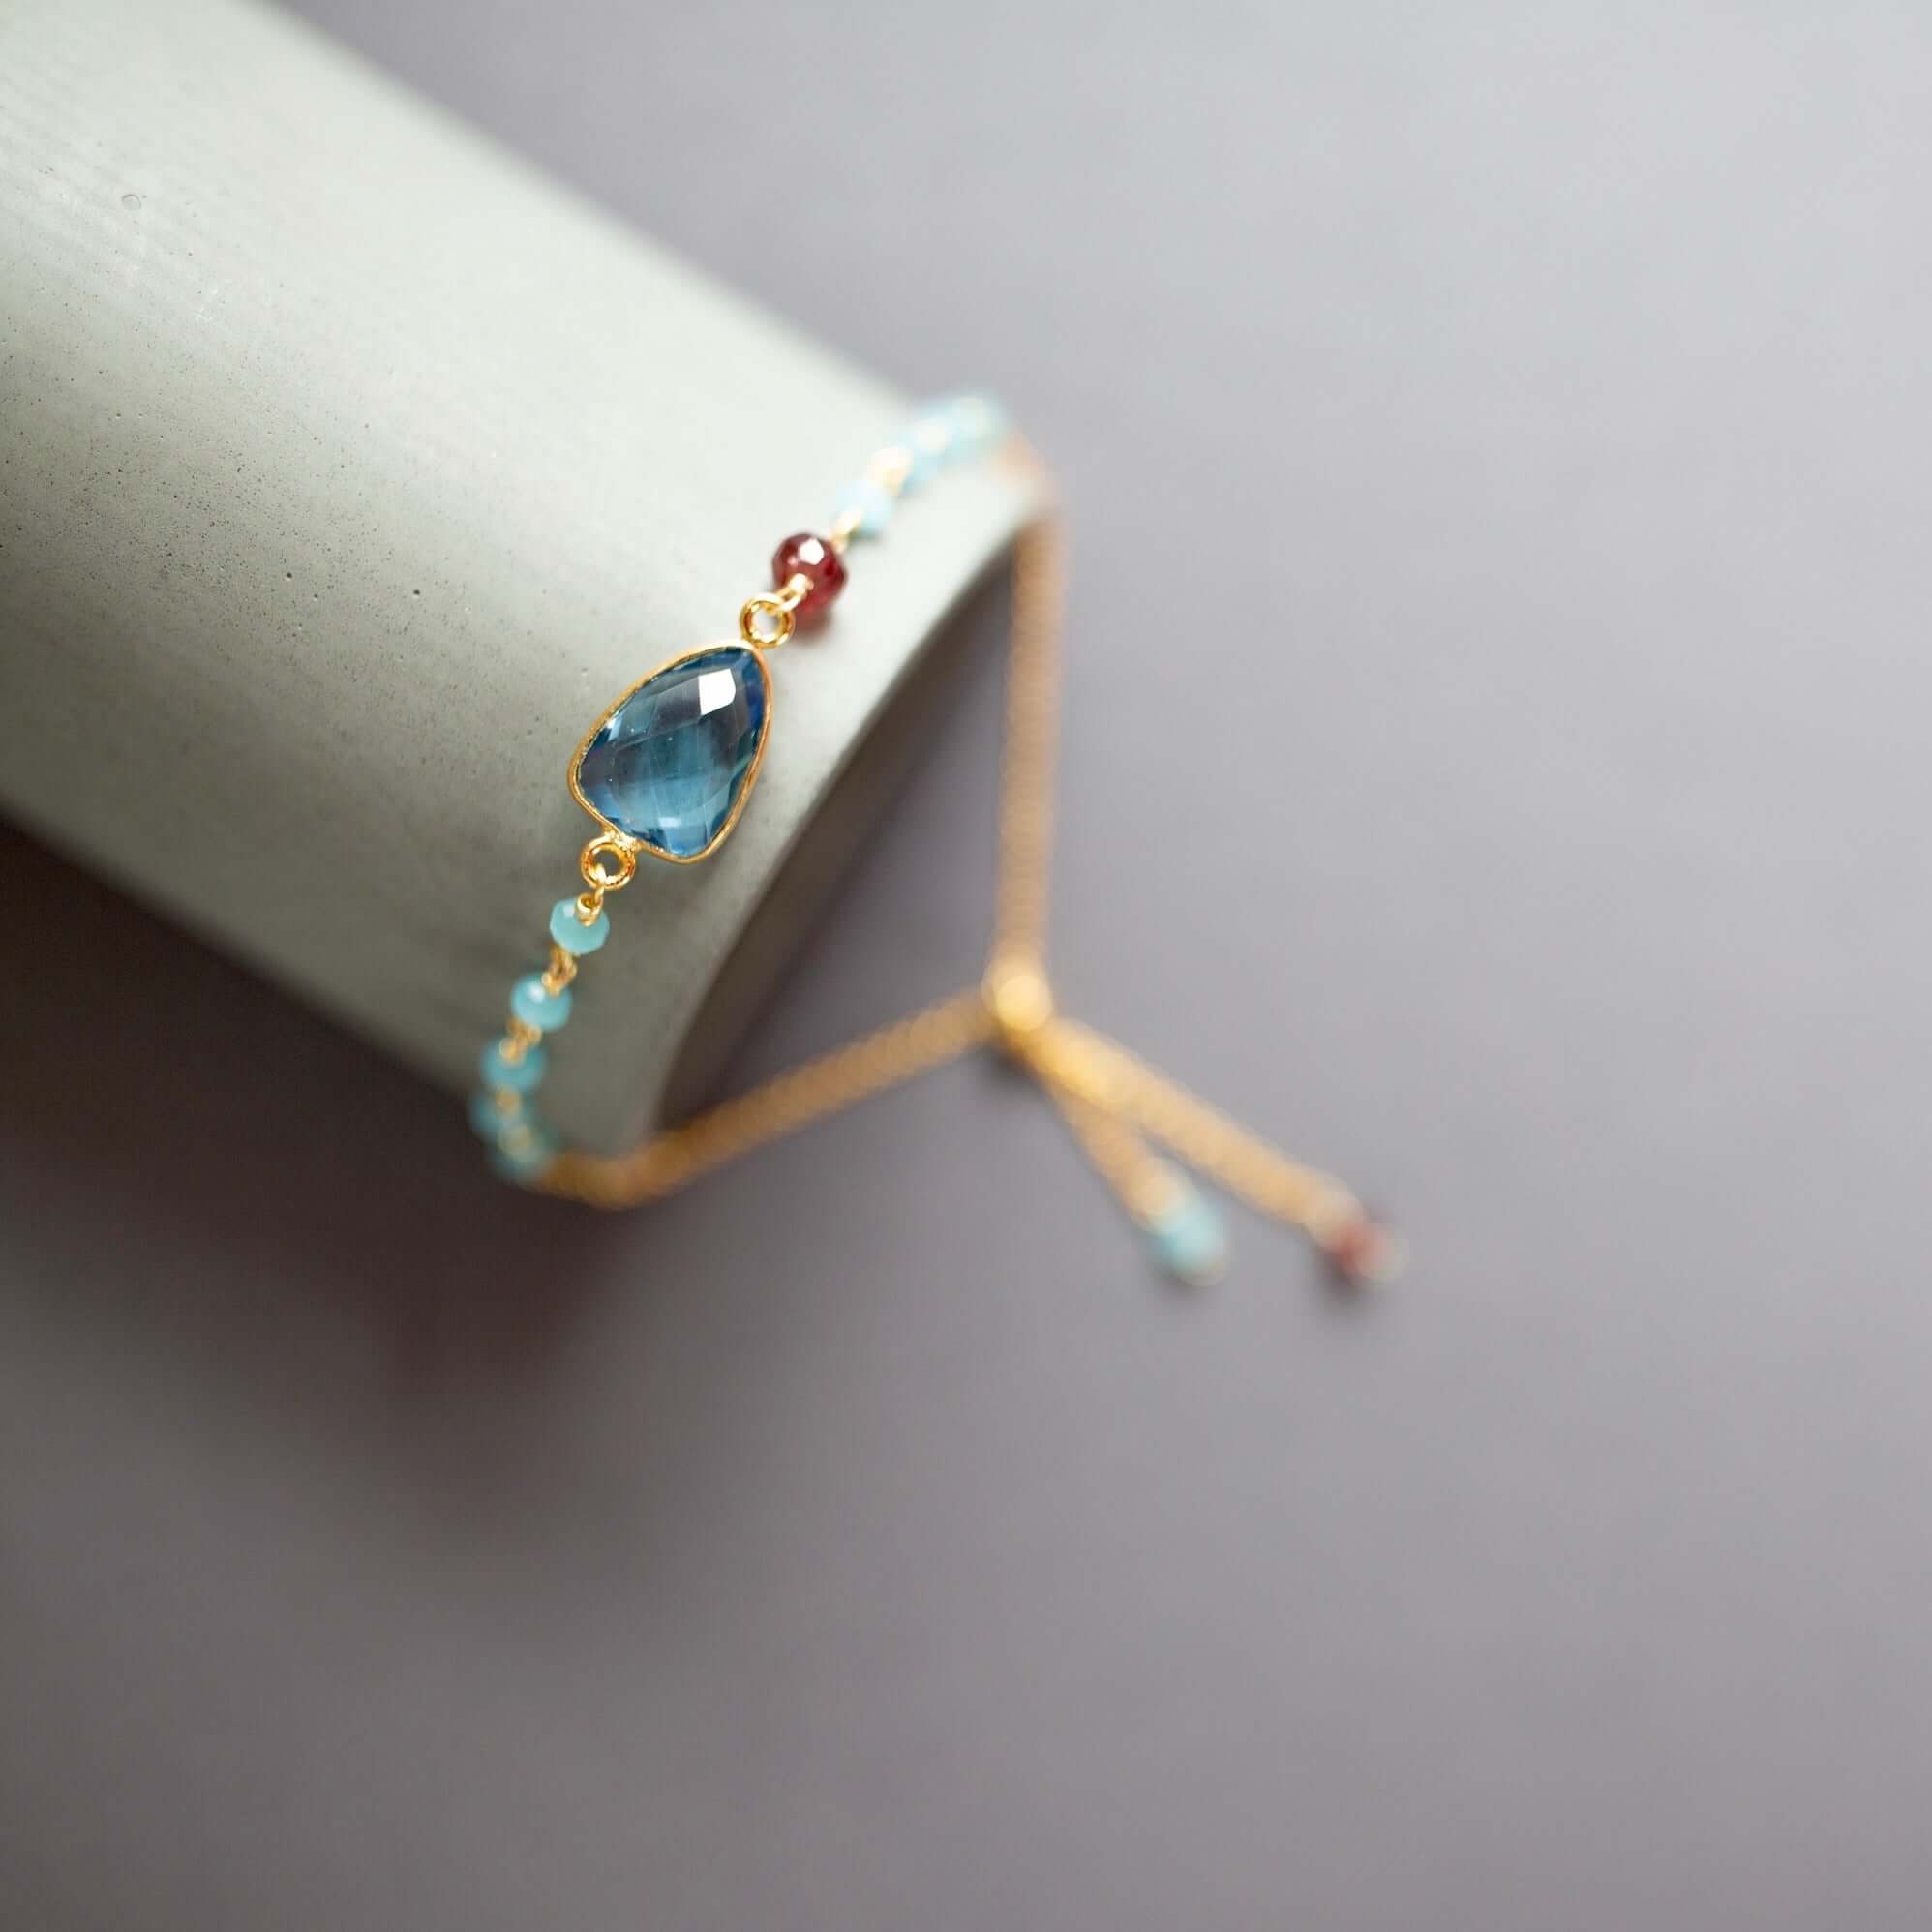 Adjustable stacking bracelet set featuring authentic London Blue Quartz